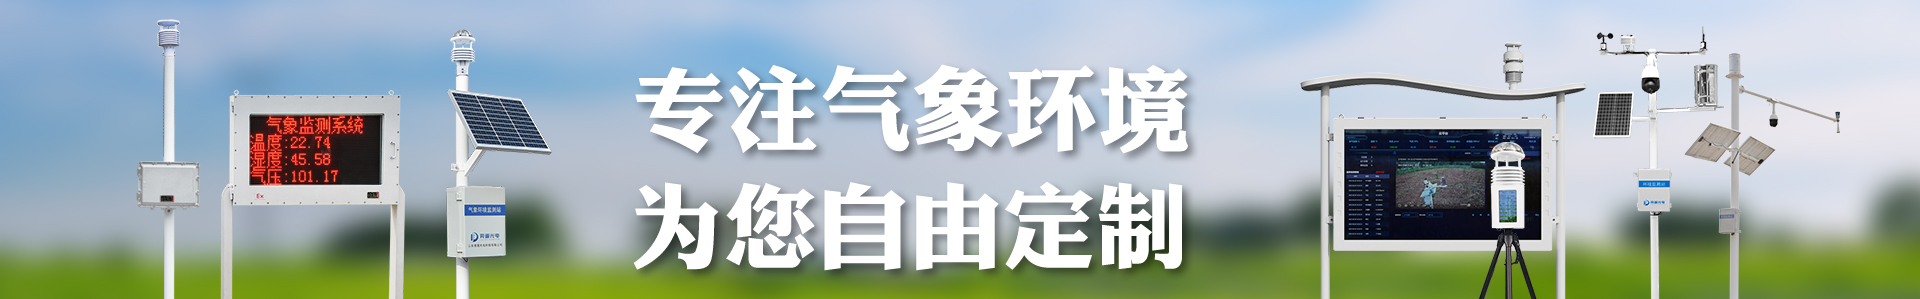 自动气象站-负氧离子监测站-水文监测站-自动气象站-小型气象站-防爆气象站-光伏气象站-南宫NG·28(中国)官方网站